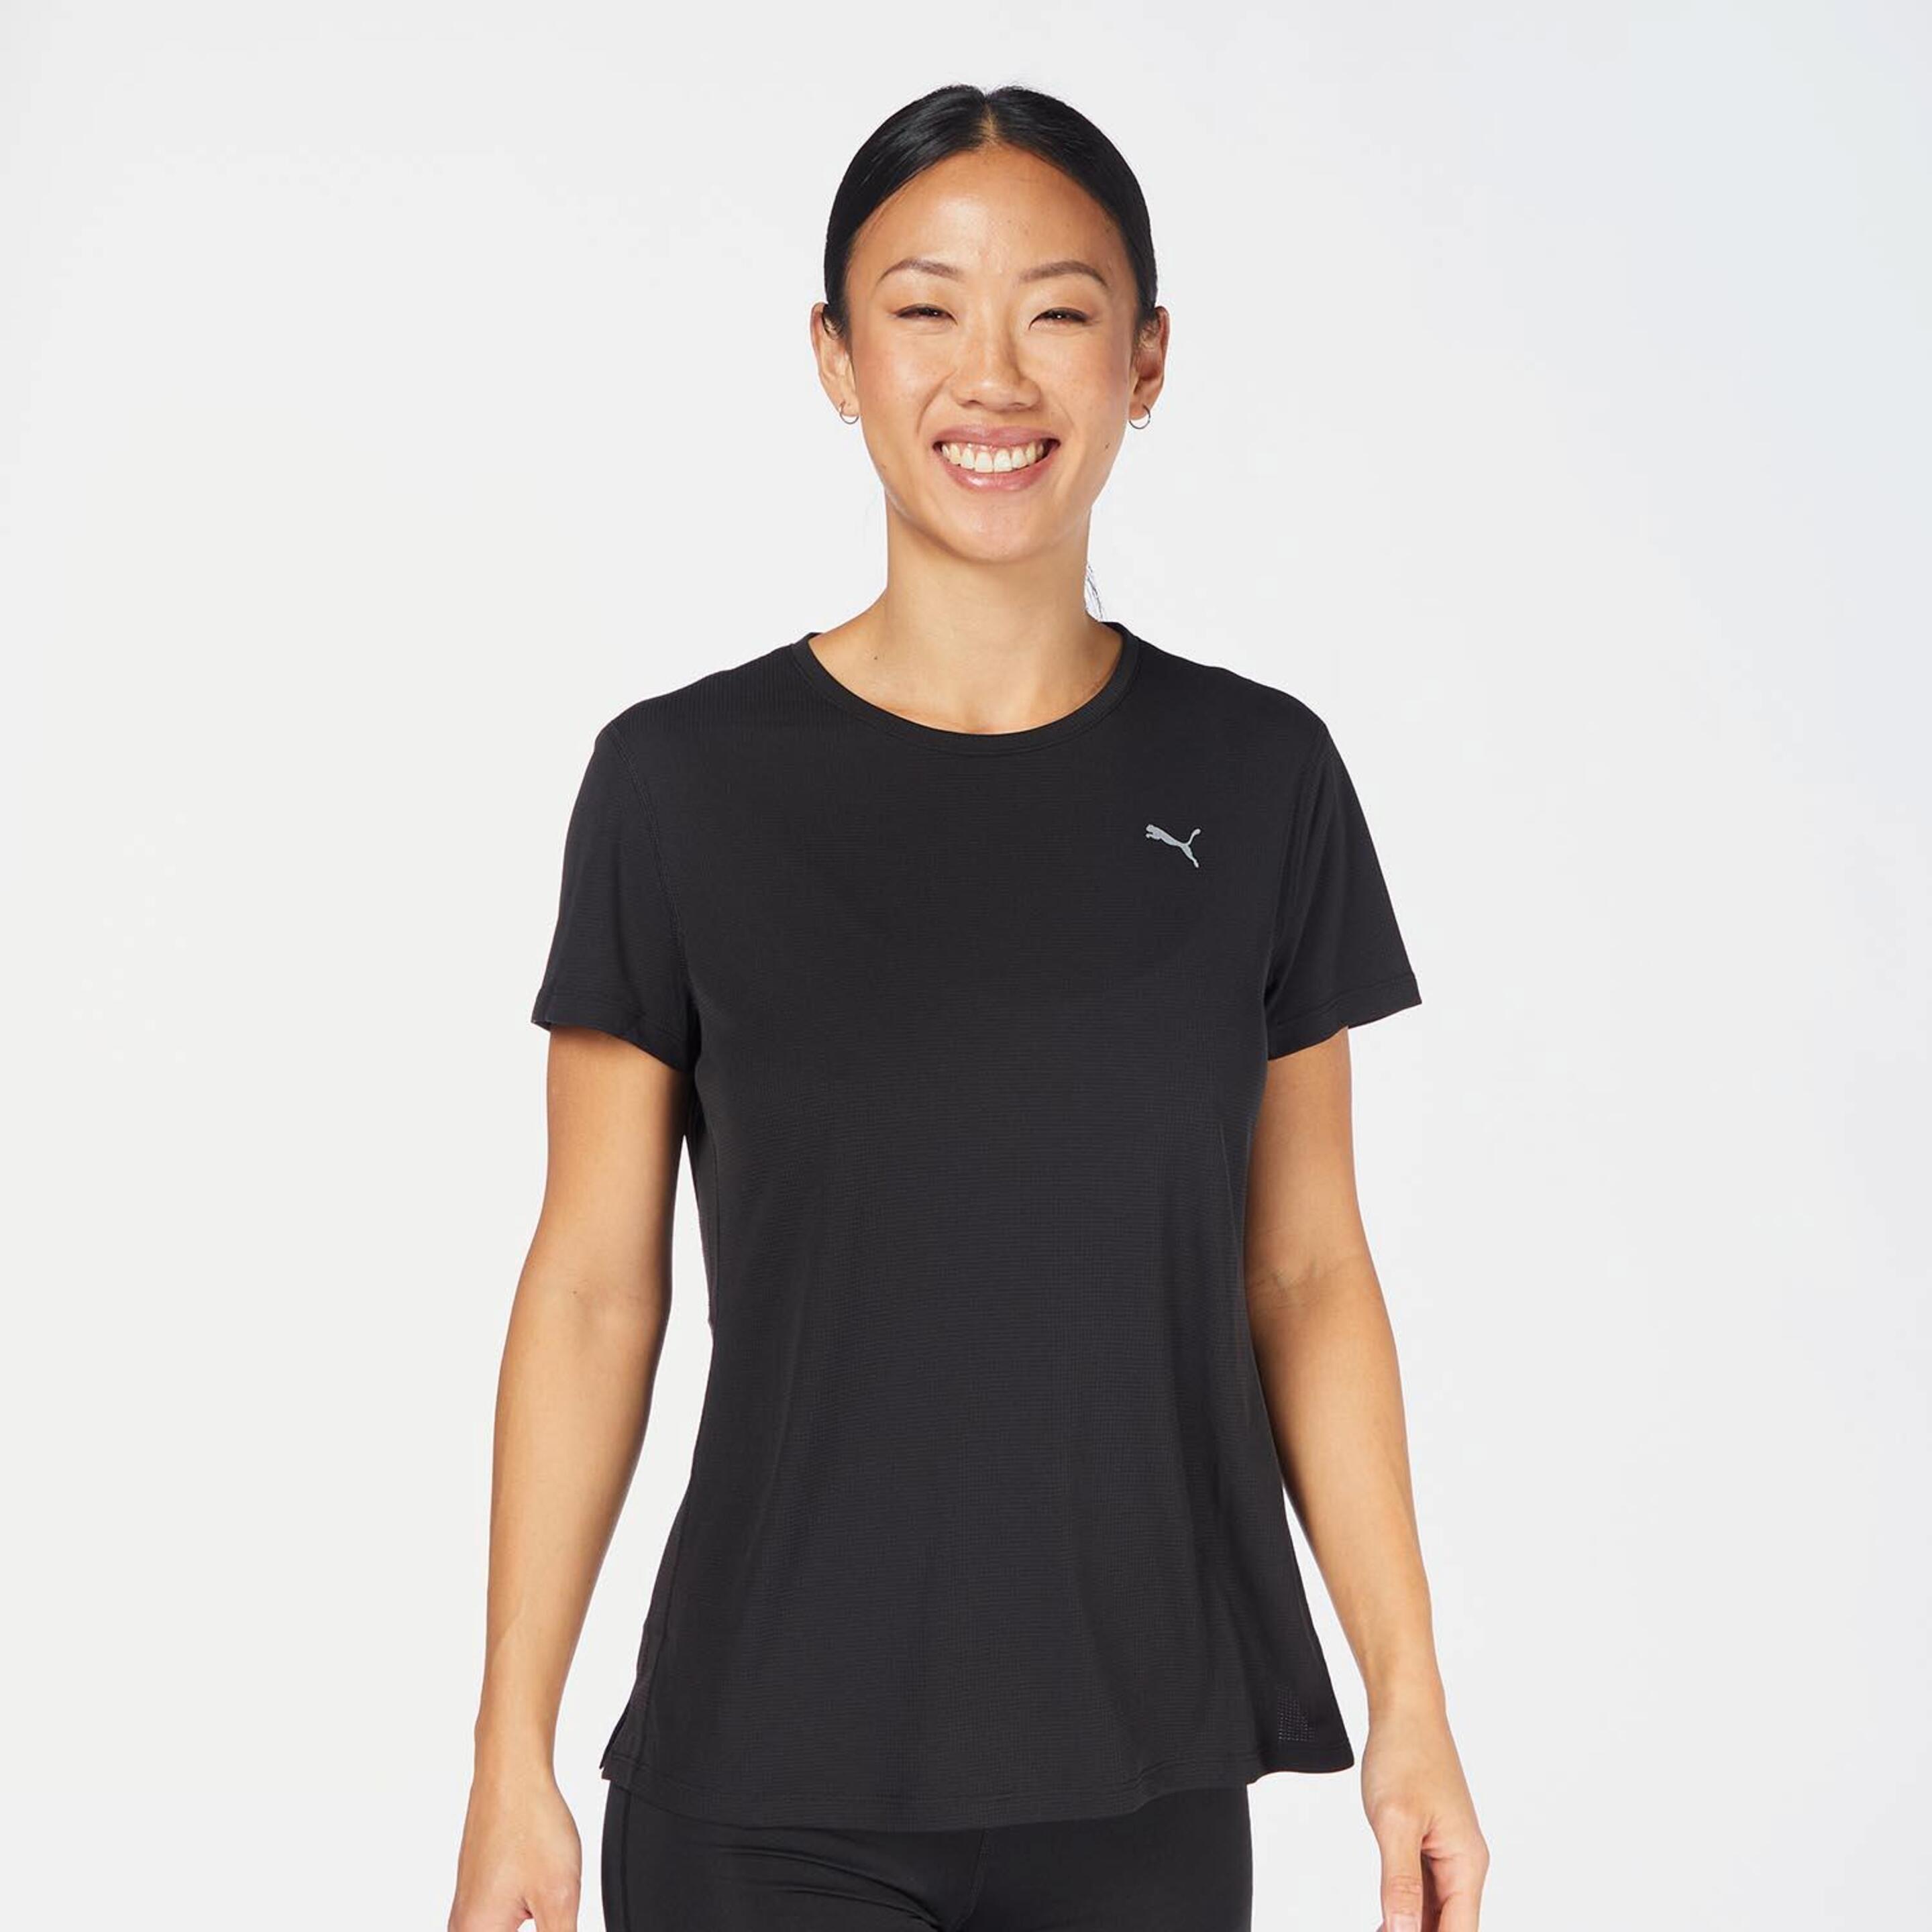 Camiseta Puma - negro - Camiseta Running Mujer